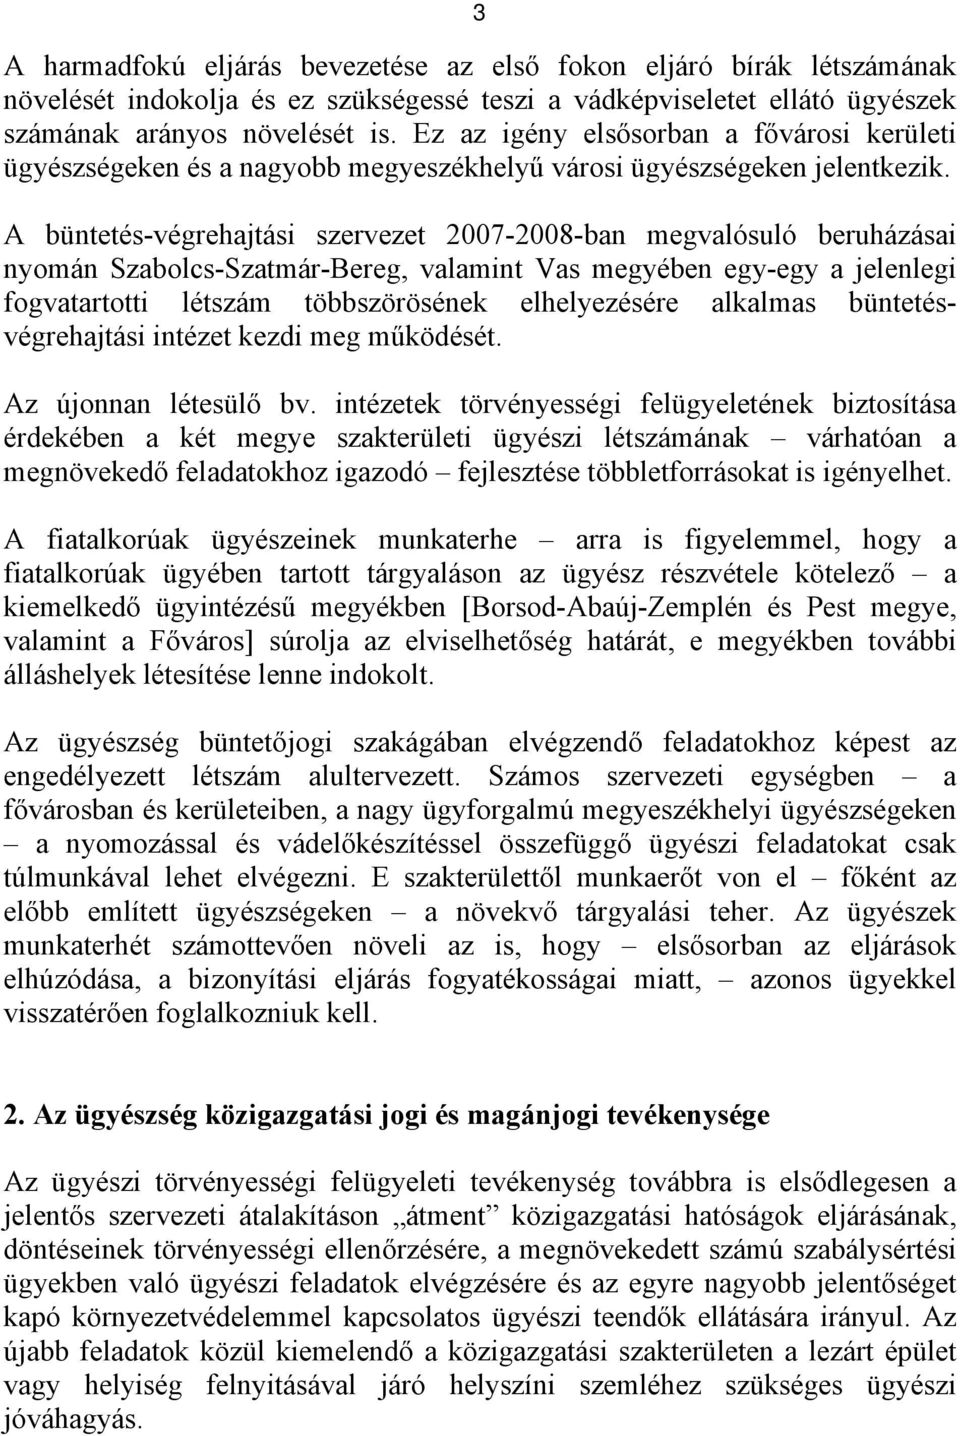 A büntetés-végrehajtási szervezet 2007-2008-ban megvalósuló beruházásai nyomán Szabolcs-Szatmár-Bereg, valamint Vas megyében egy-egy a jelenlegi fogvatartotti létszám többszörösének elhelyezésére